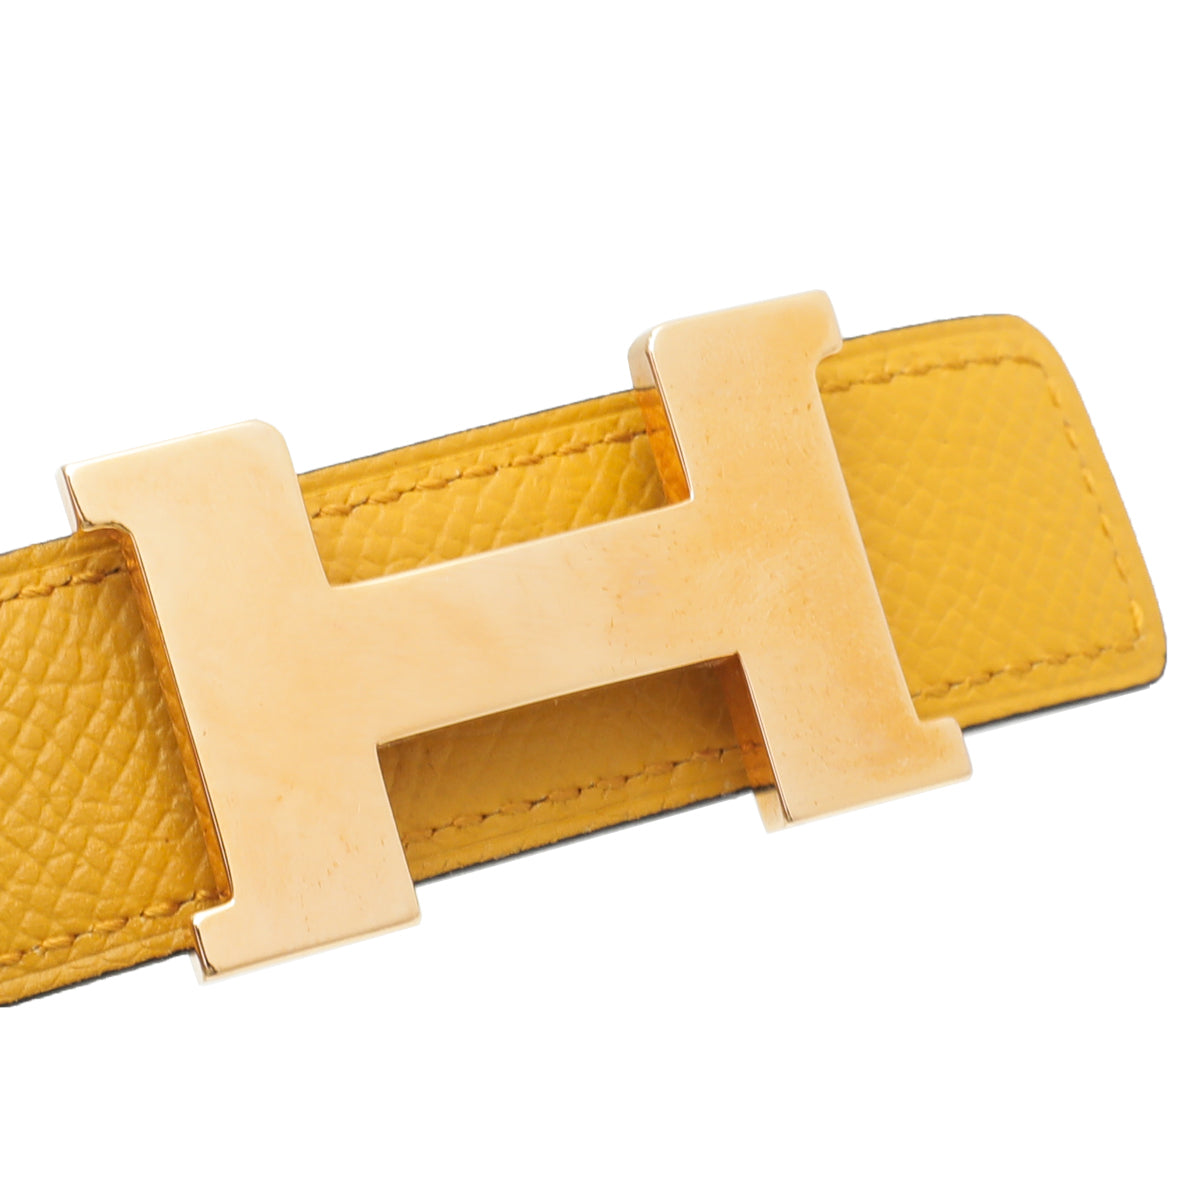 Hermes Bicolor Mini Constance Reversible Buckle Belt